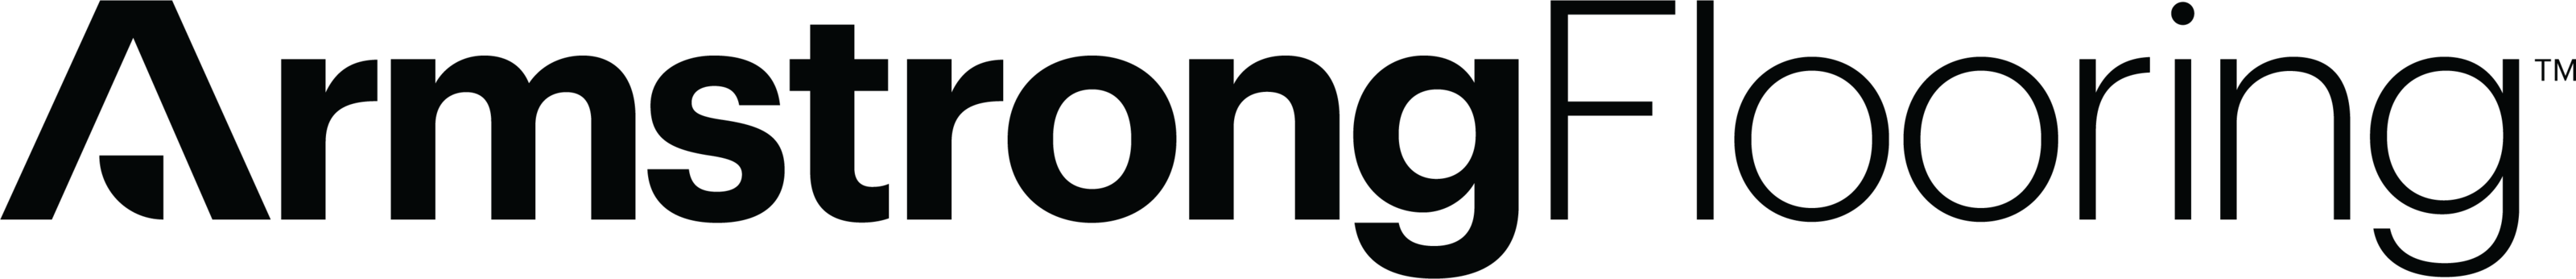 armstrong-flooring-logo